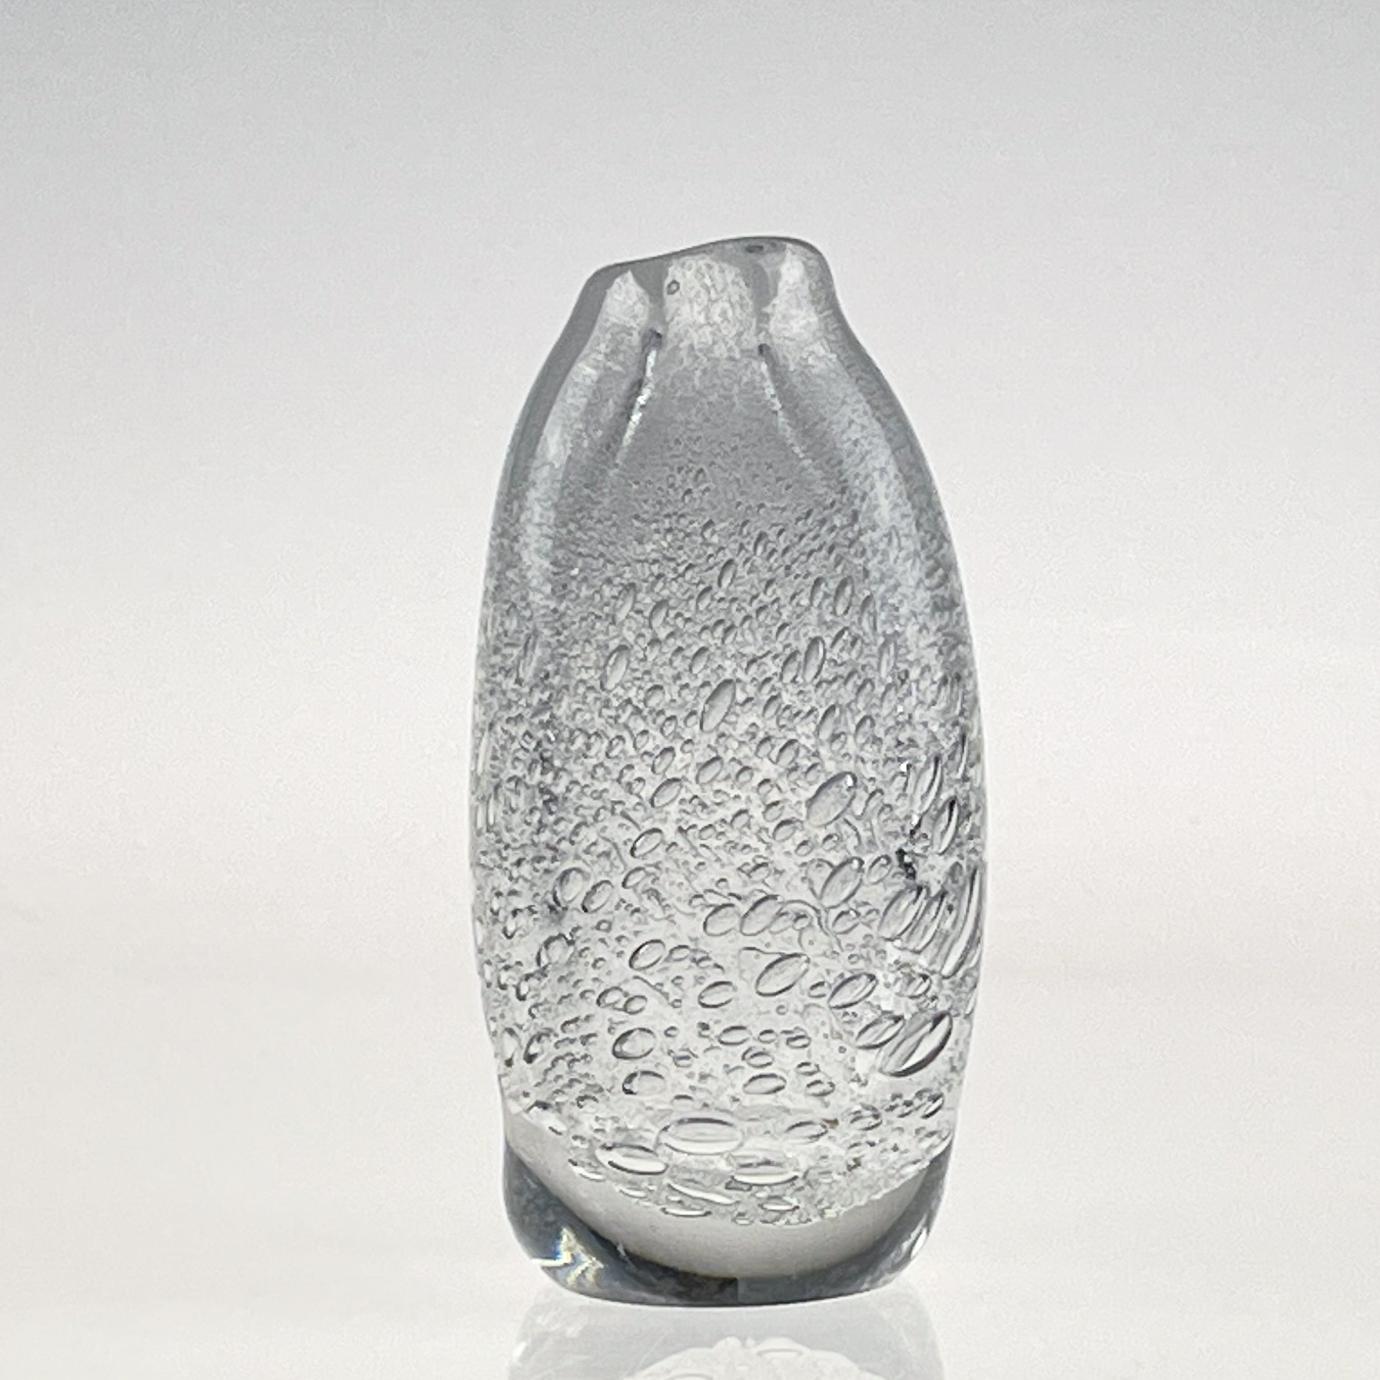 Mid-20th Century Scandinavian Modern Tapio Wirkkala Crystal Glass Art Vase Handblown Iittala